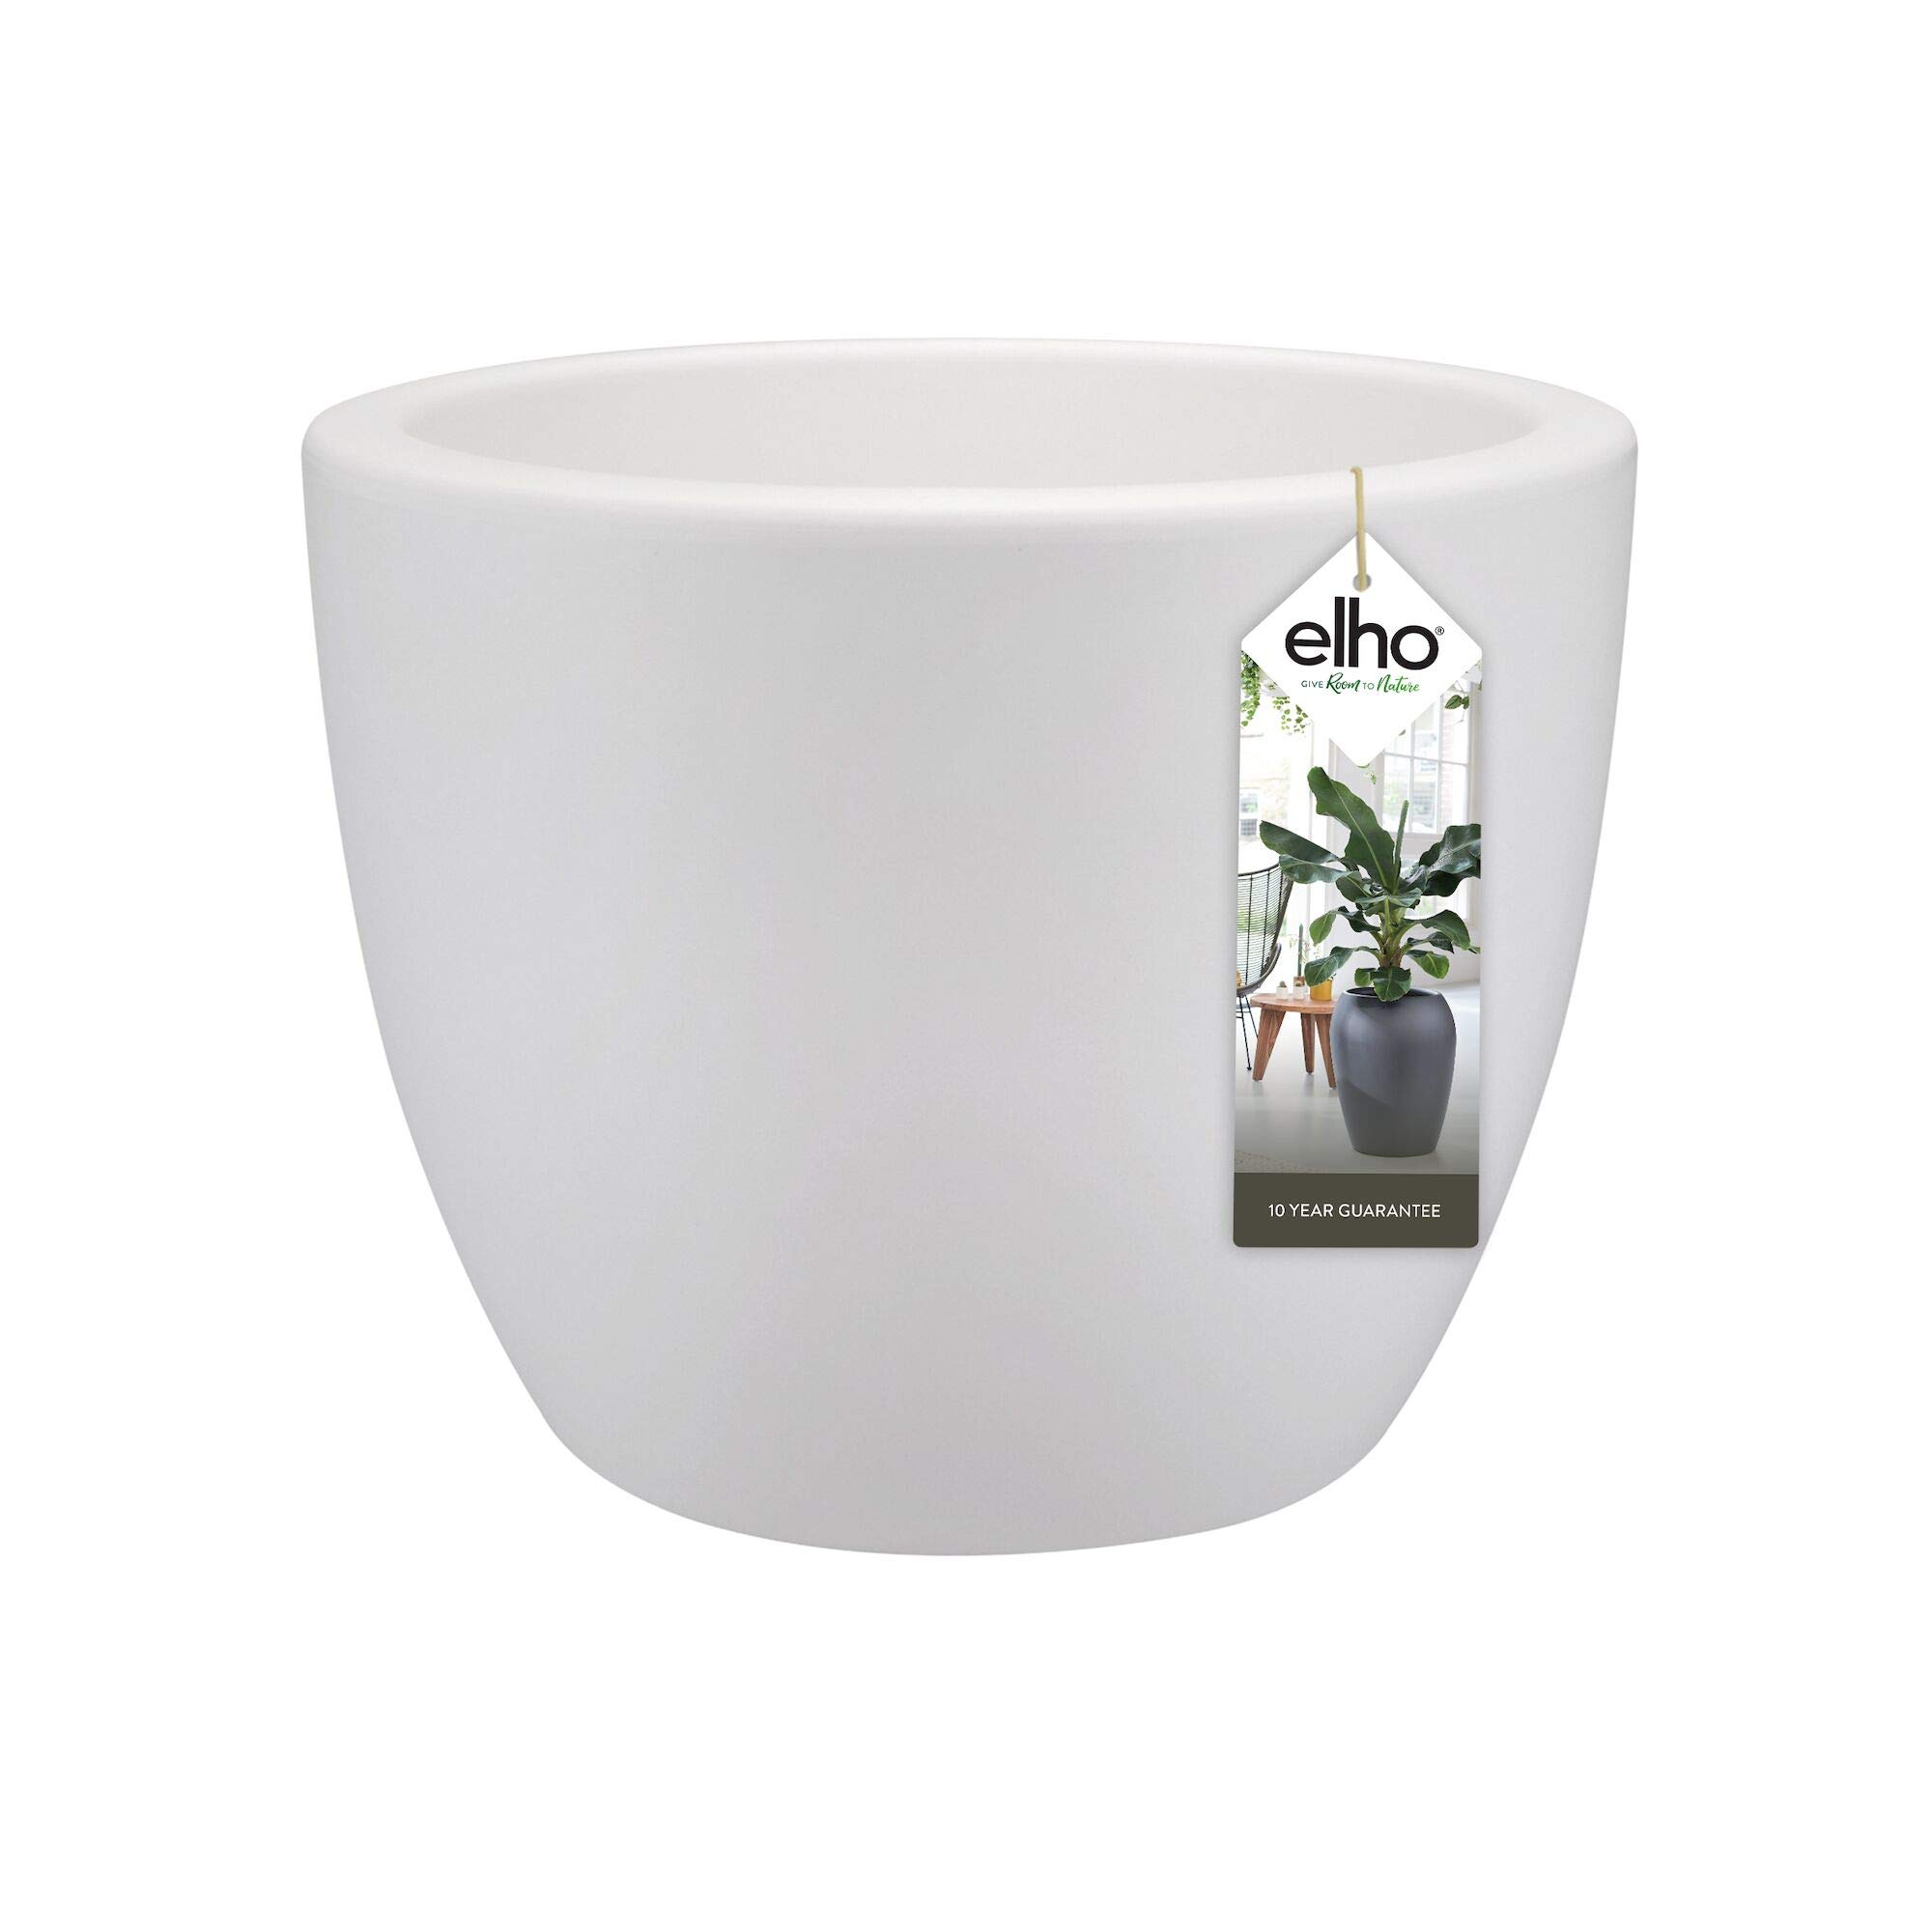 elho Pure Soft Round 60 - Blumentopf für Innen & Außen - Ø 59.0 x H 44.5 cm - Weiß/Weiss